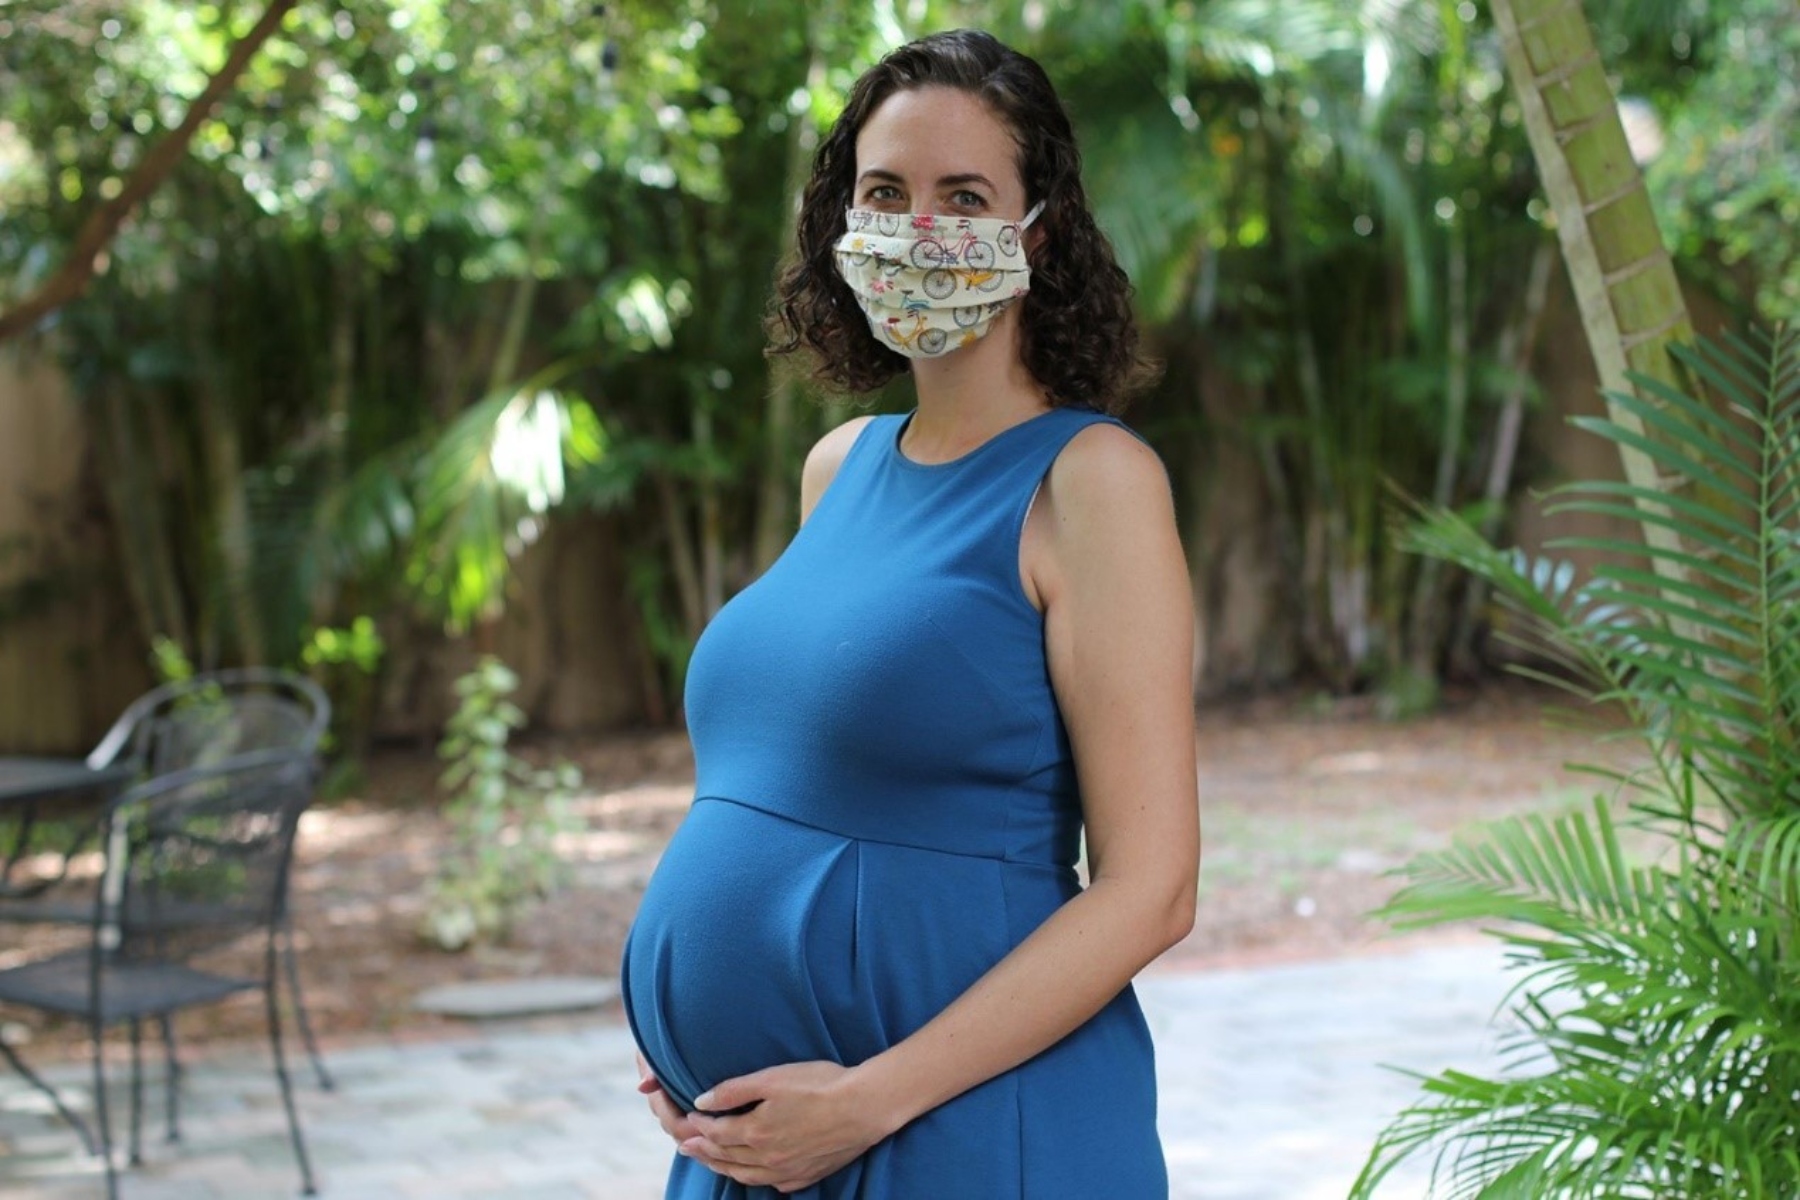 Τοκοφοβία: Γιατί ανησυχούν οι εγκυμονούσες μετά την πανδημία;